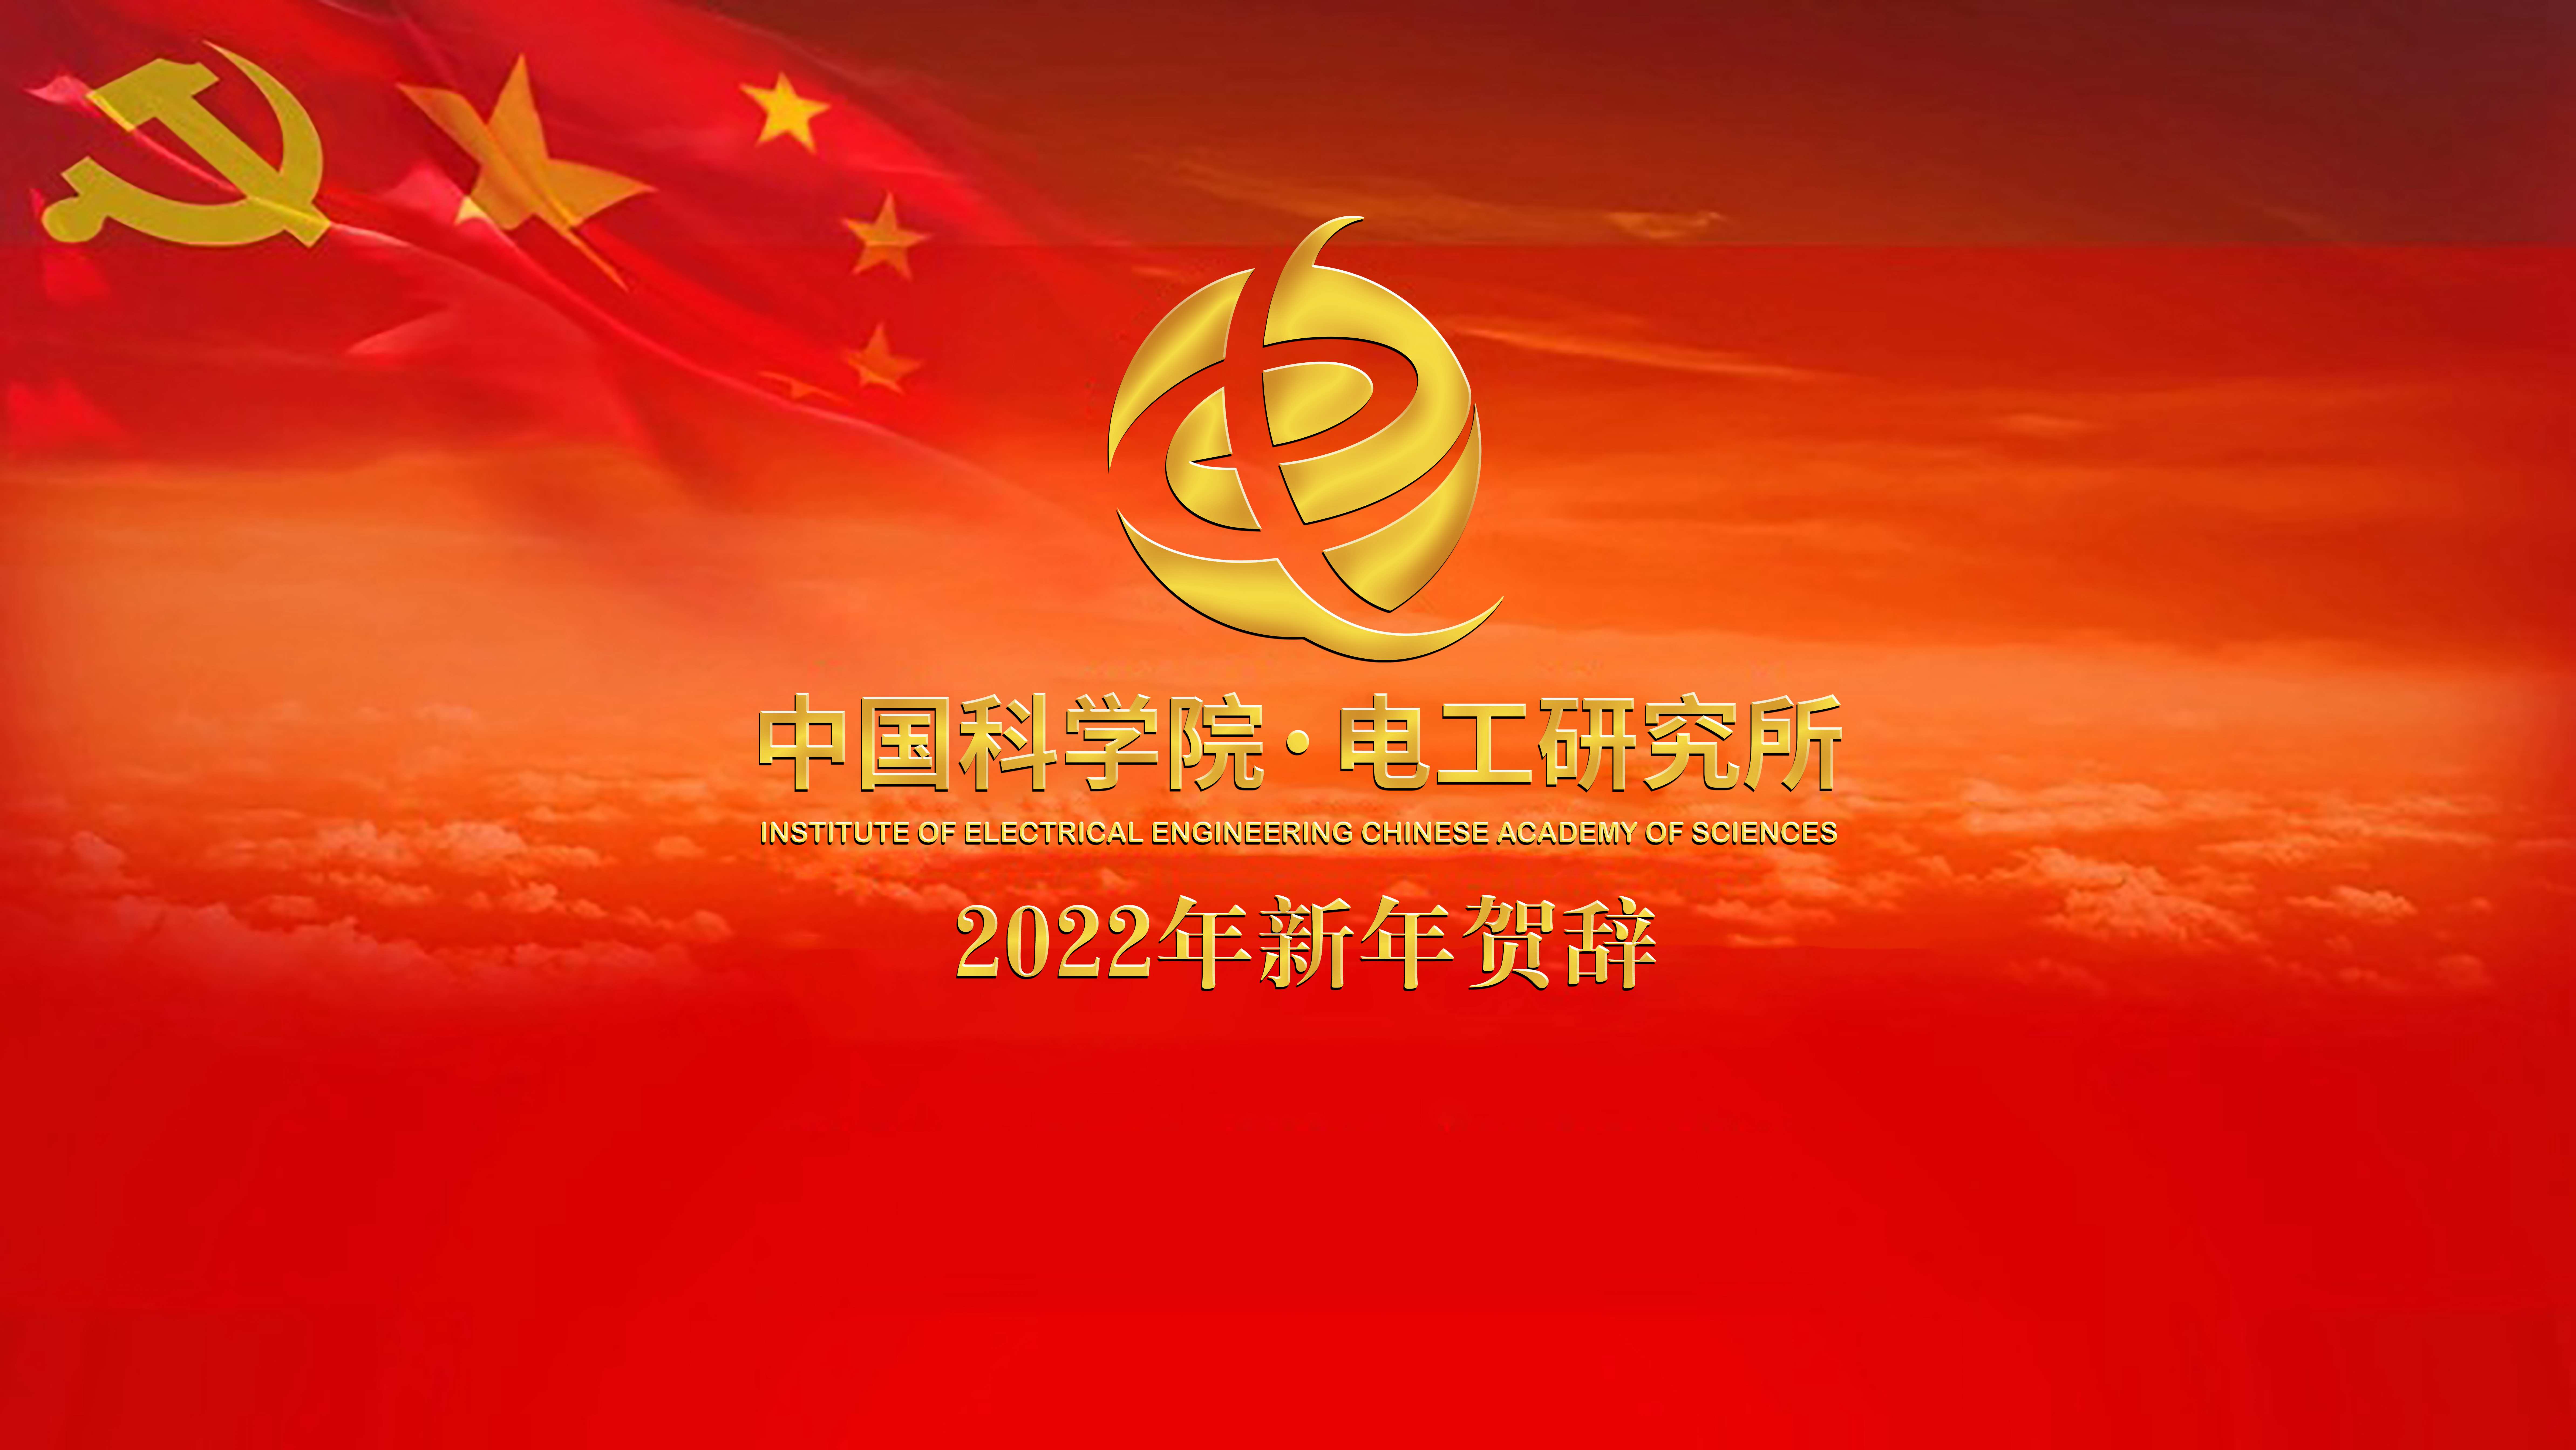 中国科学院电工研究所2022年新年贺辞